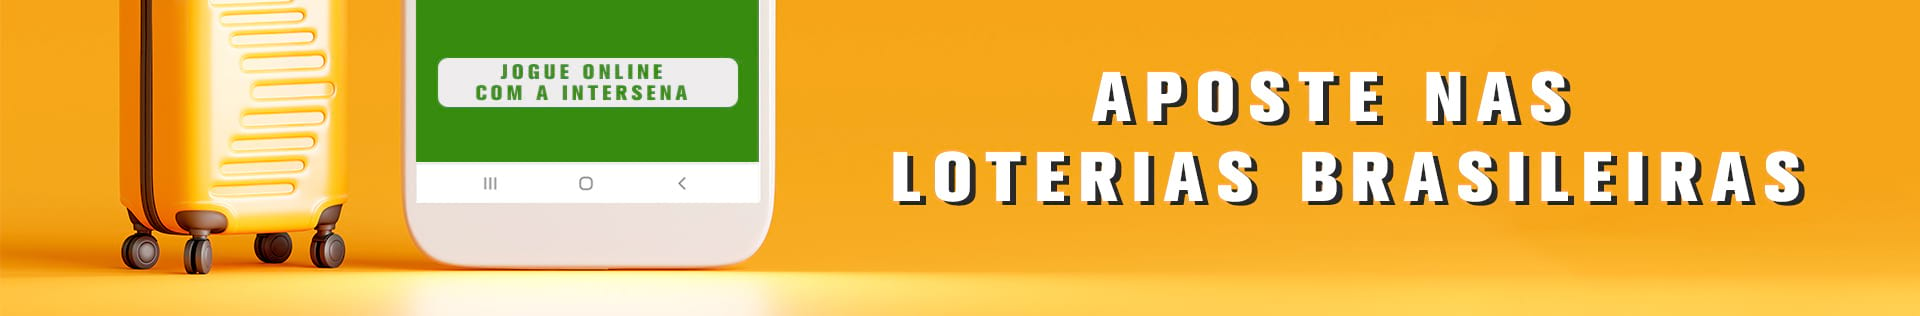 Aposte nas Loterias da Caixa com a Intersena